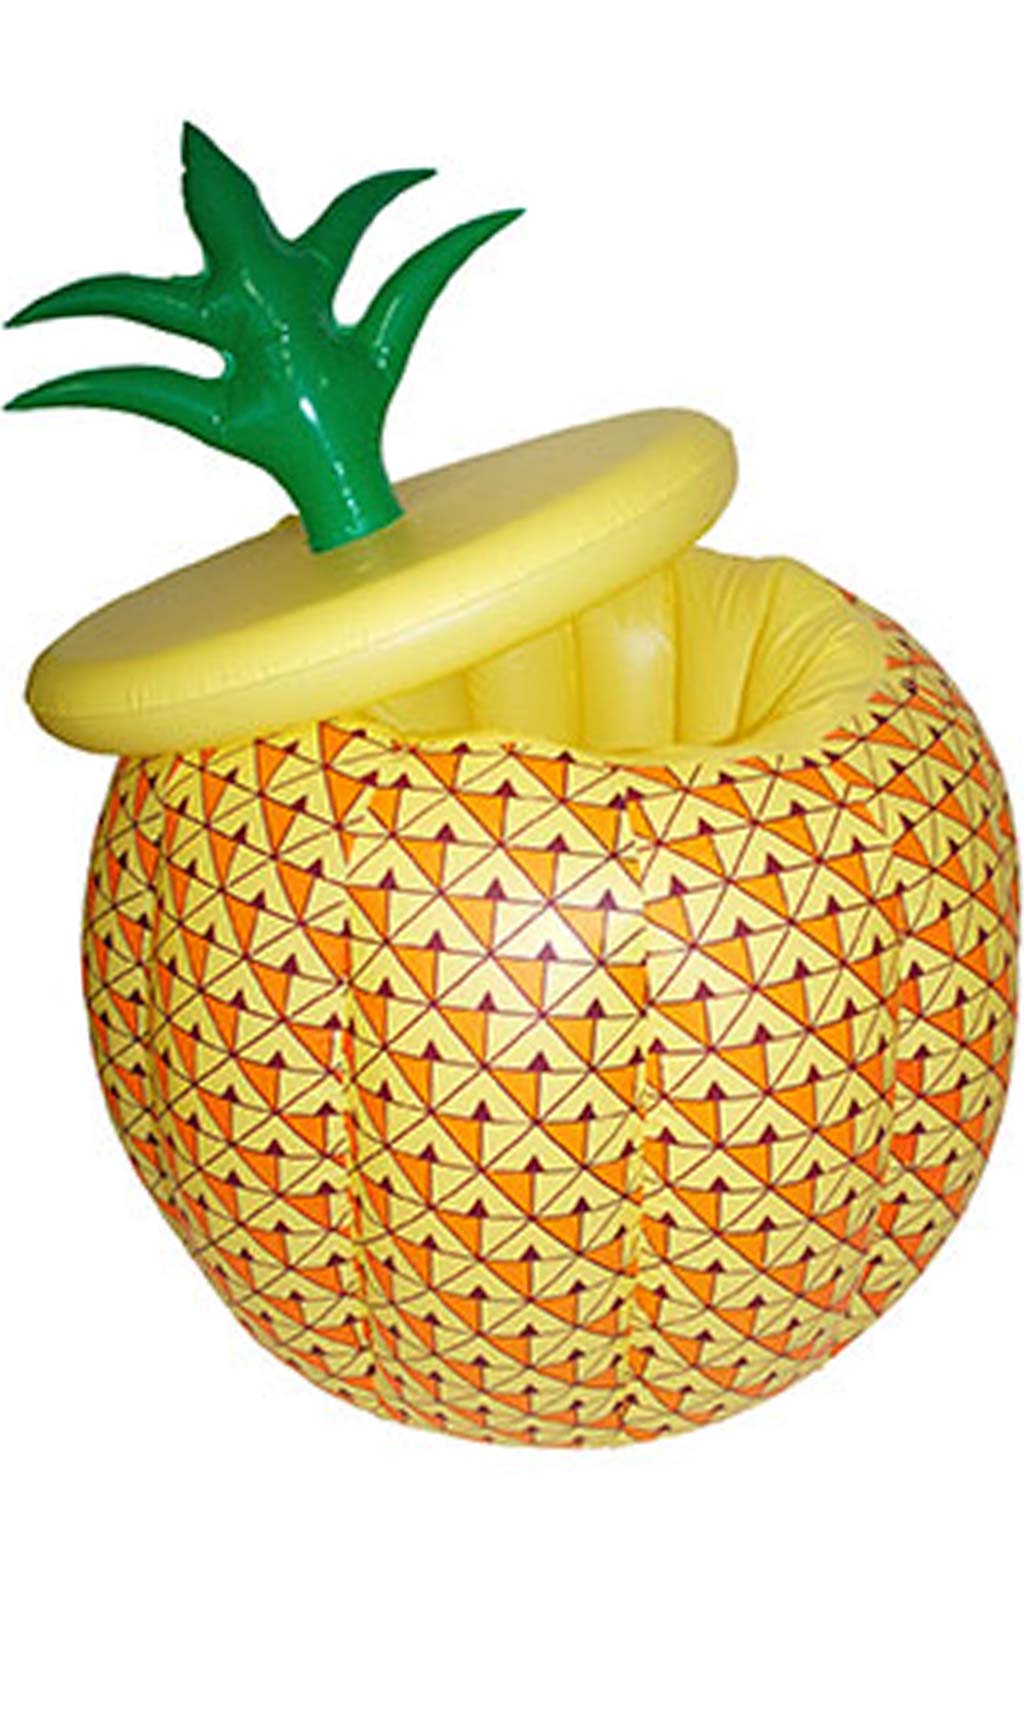 Ananas Frigo Gonflable